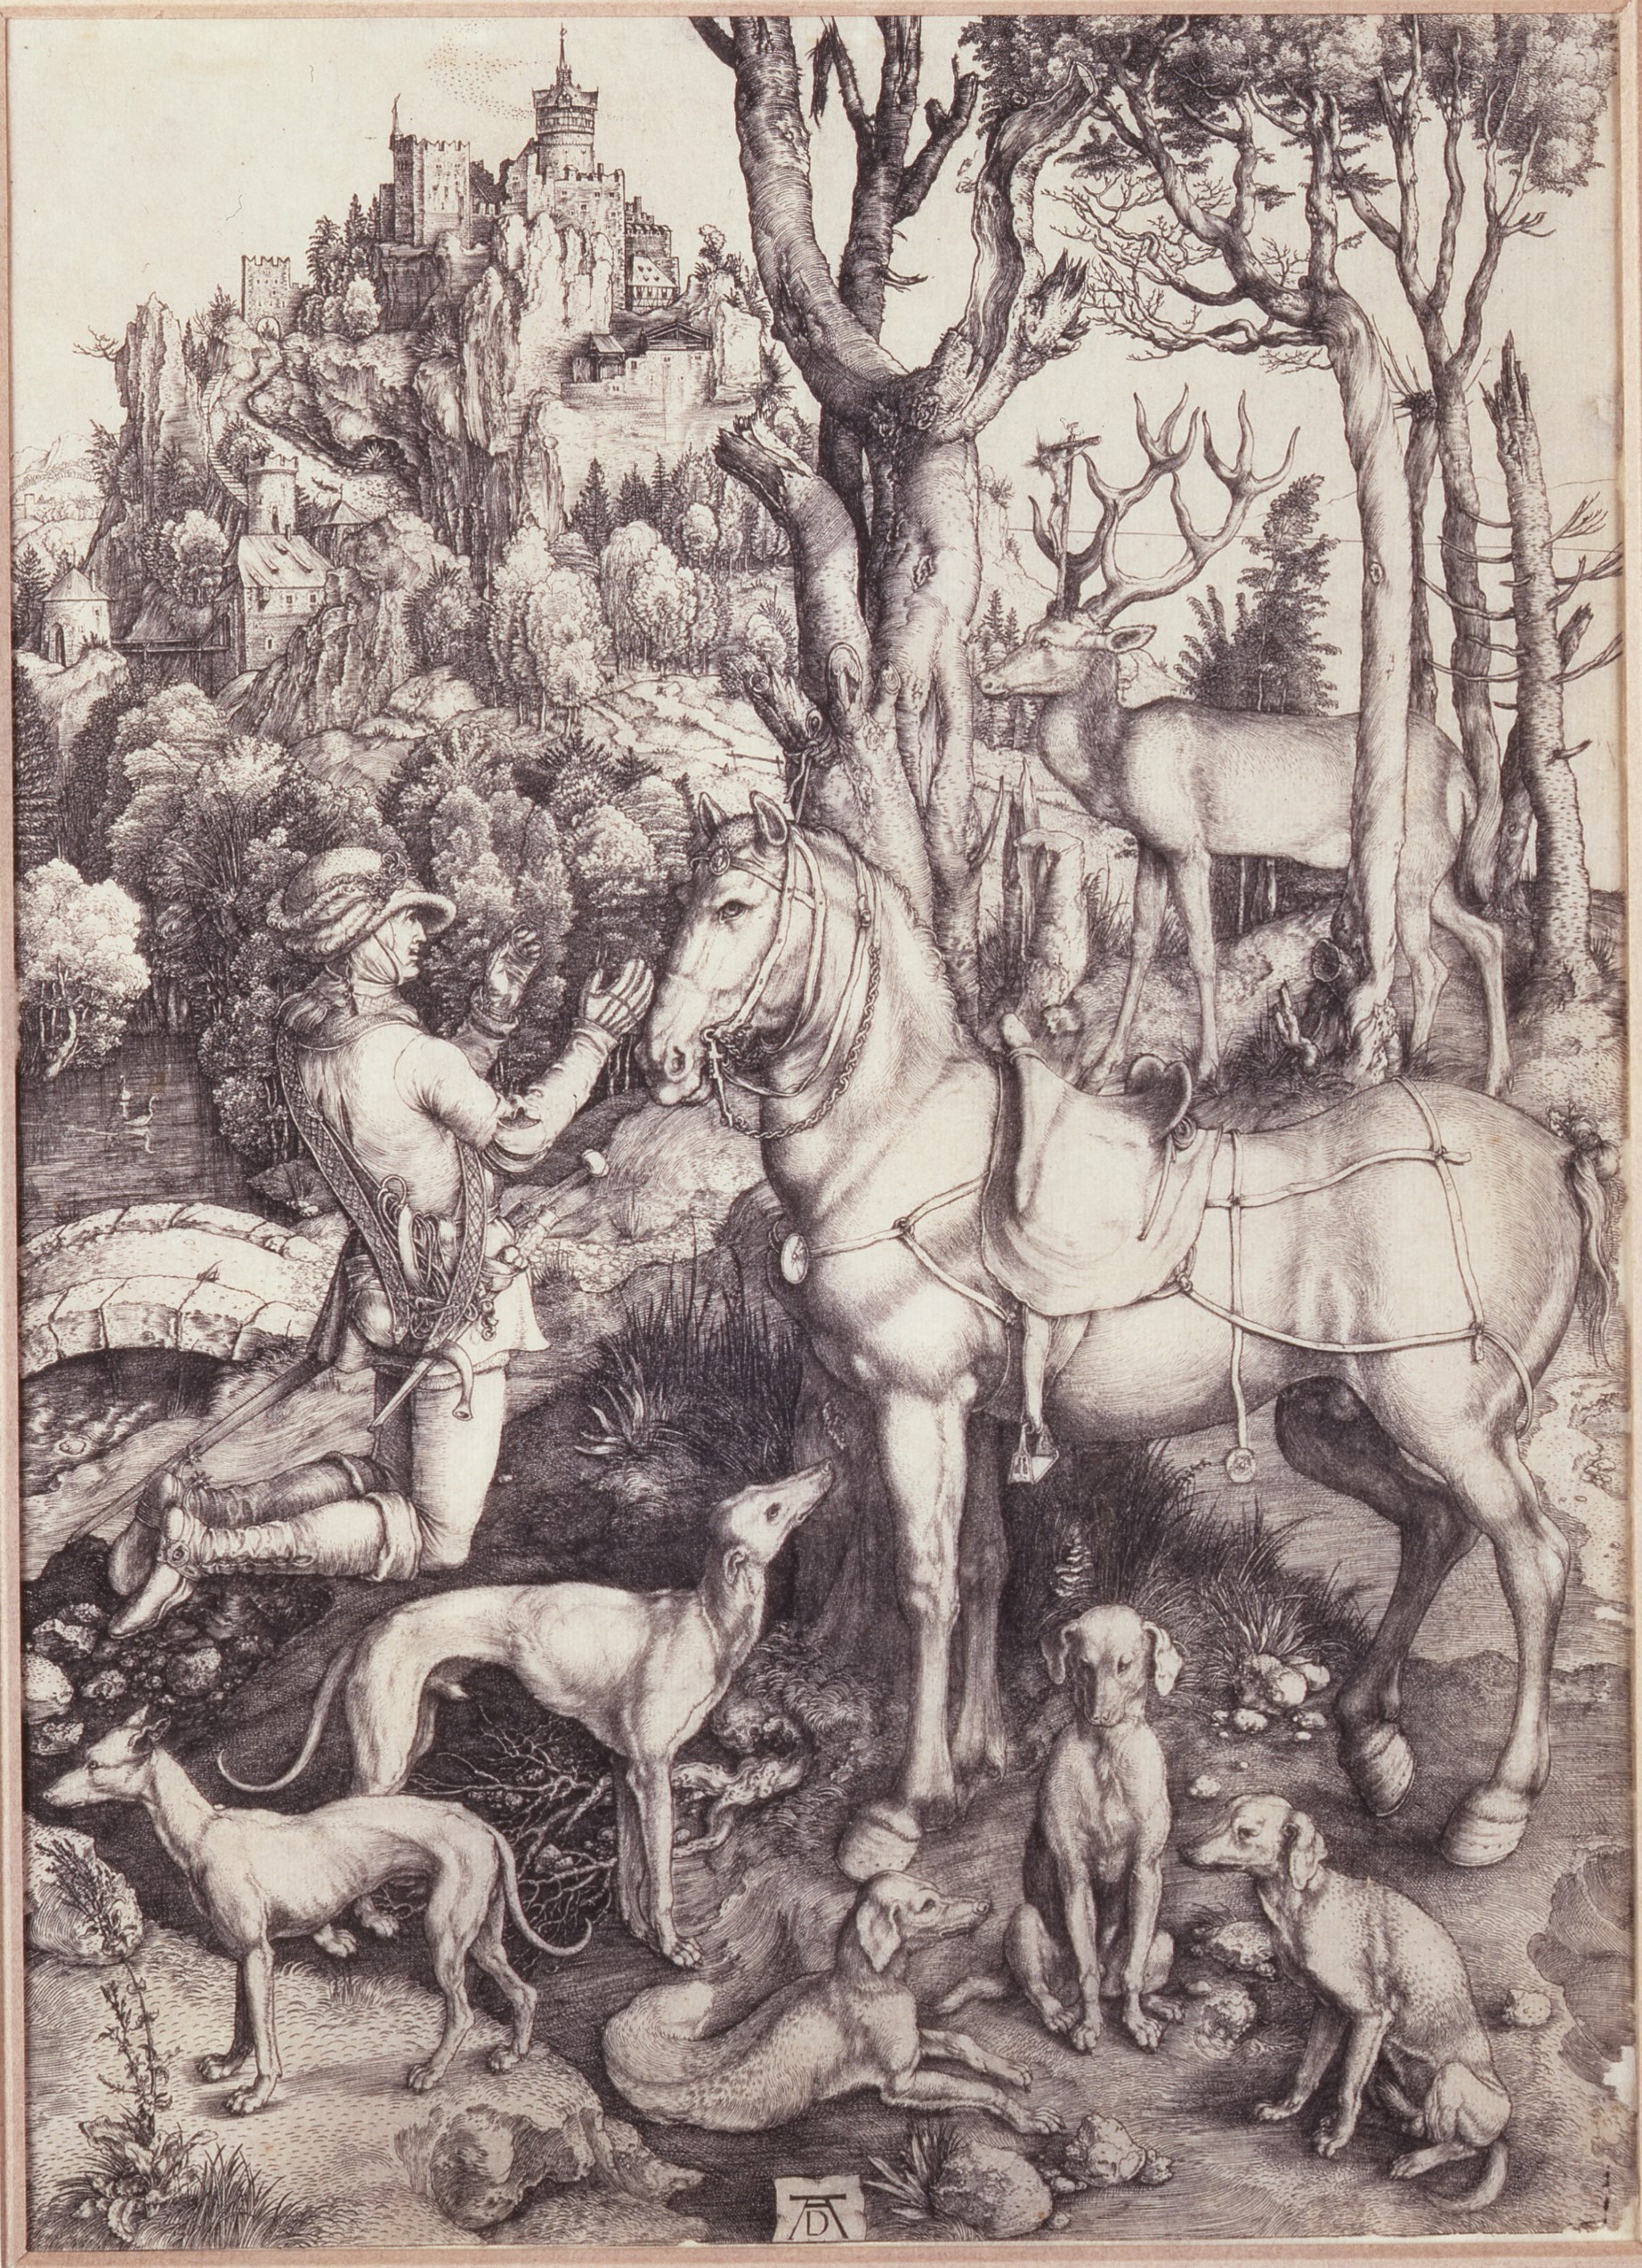 Le miracle de saint Eustache, Albert Dürer, 1540, Allemagne, burin (63 111 1) (c) musée de la Chasse et de la Nature, Paris -Nicolas Mathéus.jpg